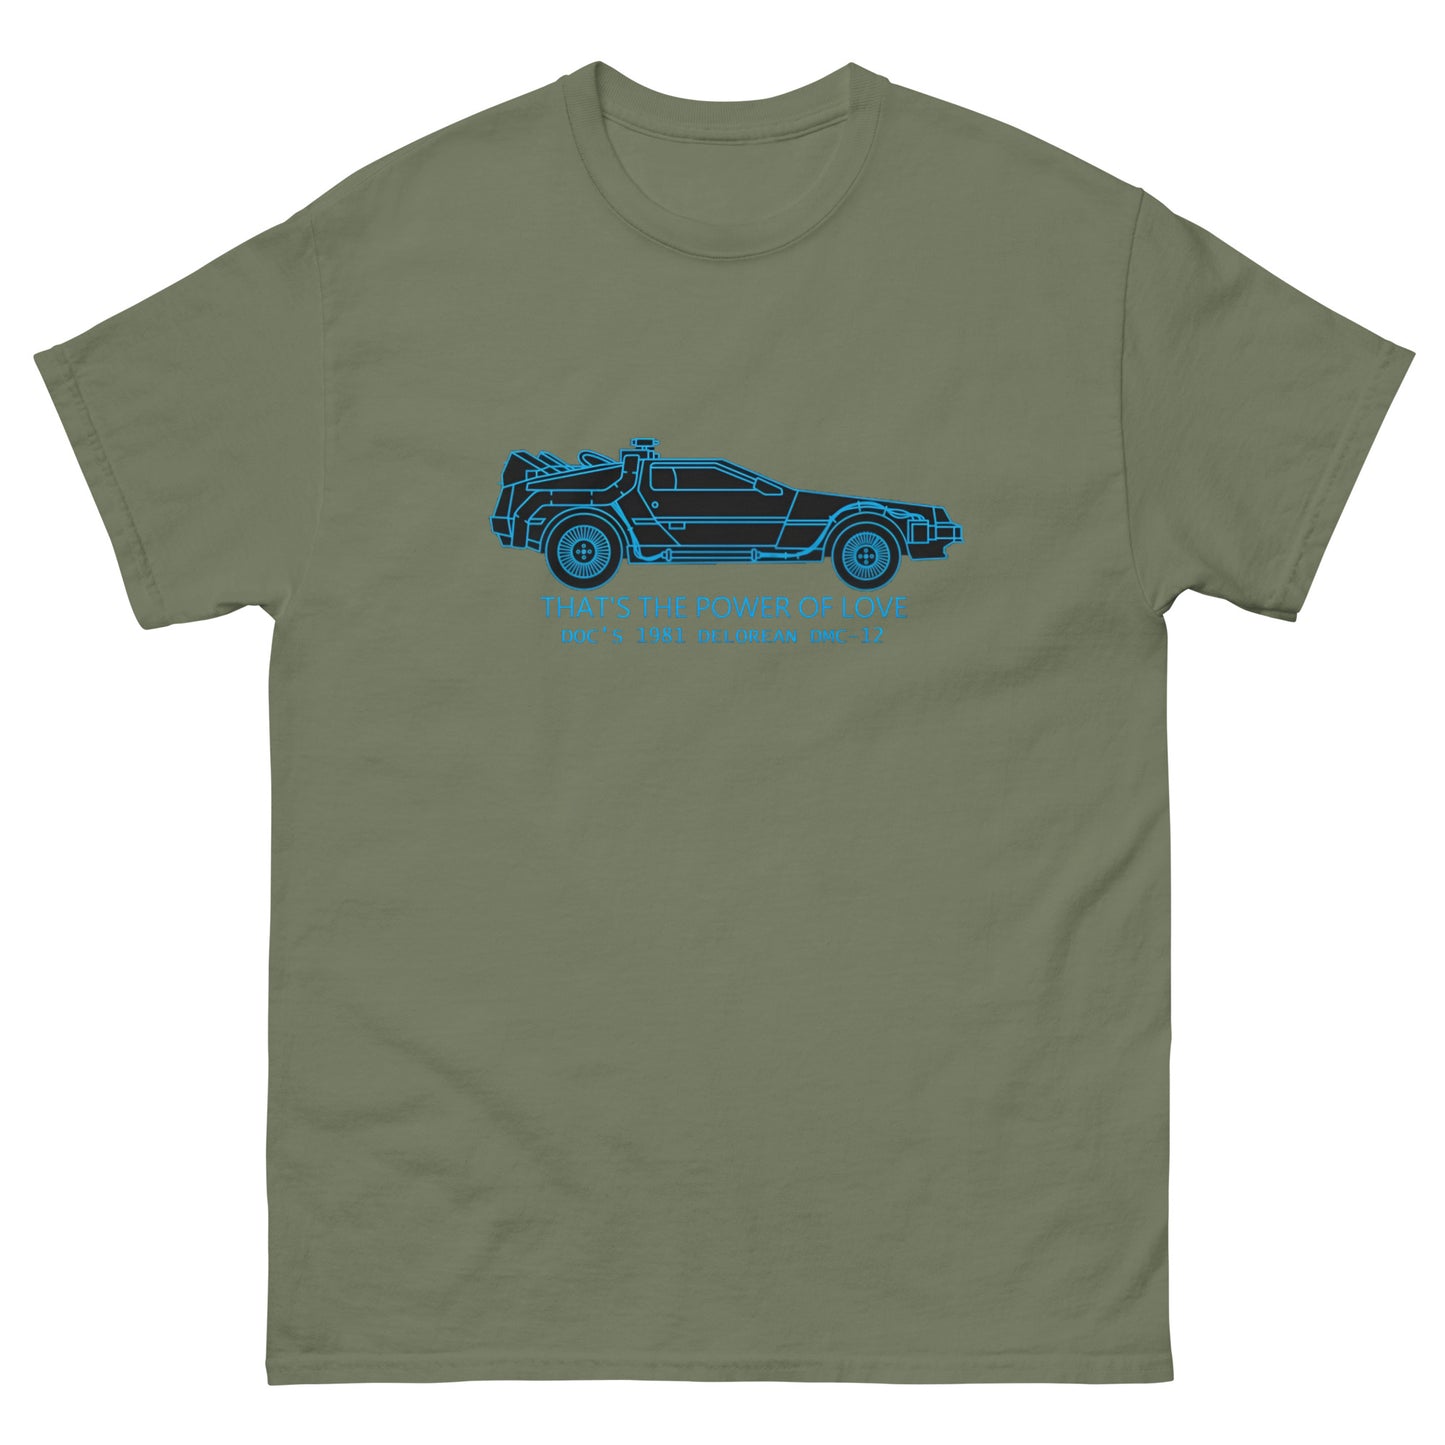 DMC DeLorean T-Shirt